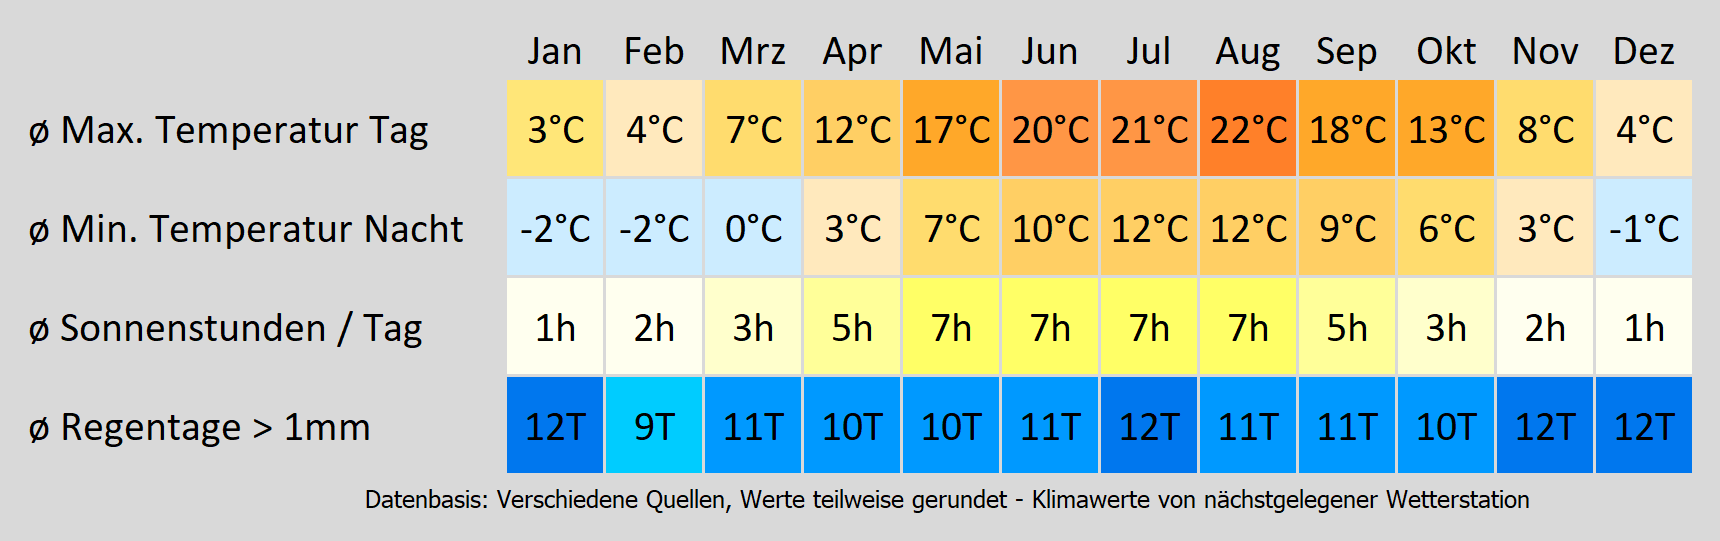 Wohnmobil mieten in Hamburg - wie wird das Wetter? Mit der Klimakarte können Sie sich informieren!